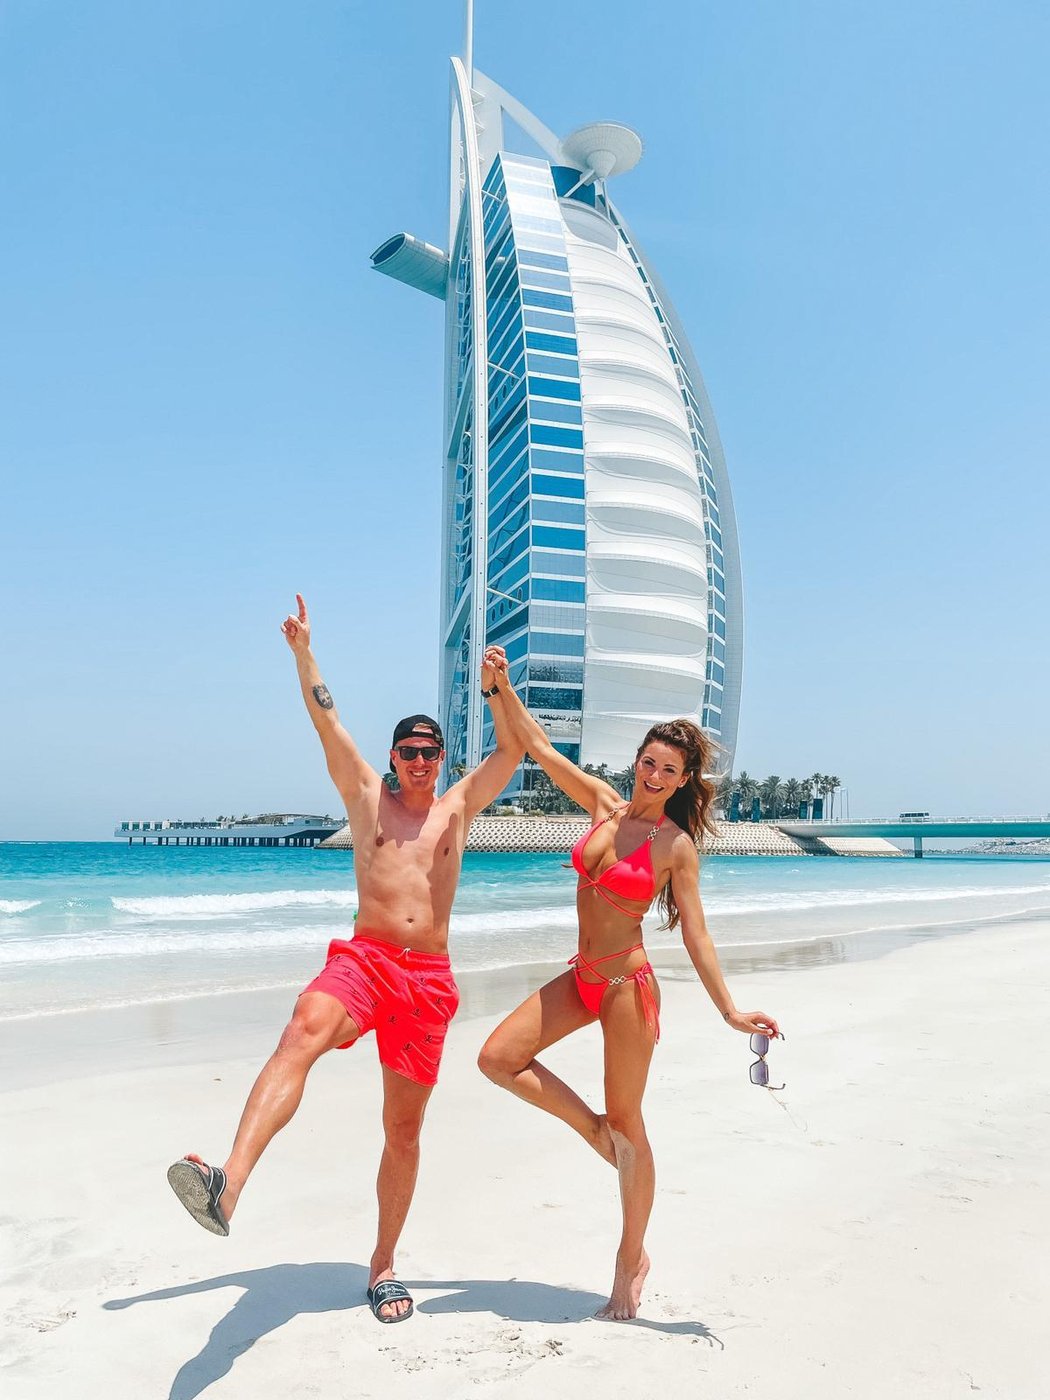 David Limberský s manželkou Lenkou slaví výročí na dovolené v exotické Dubaji.